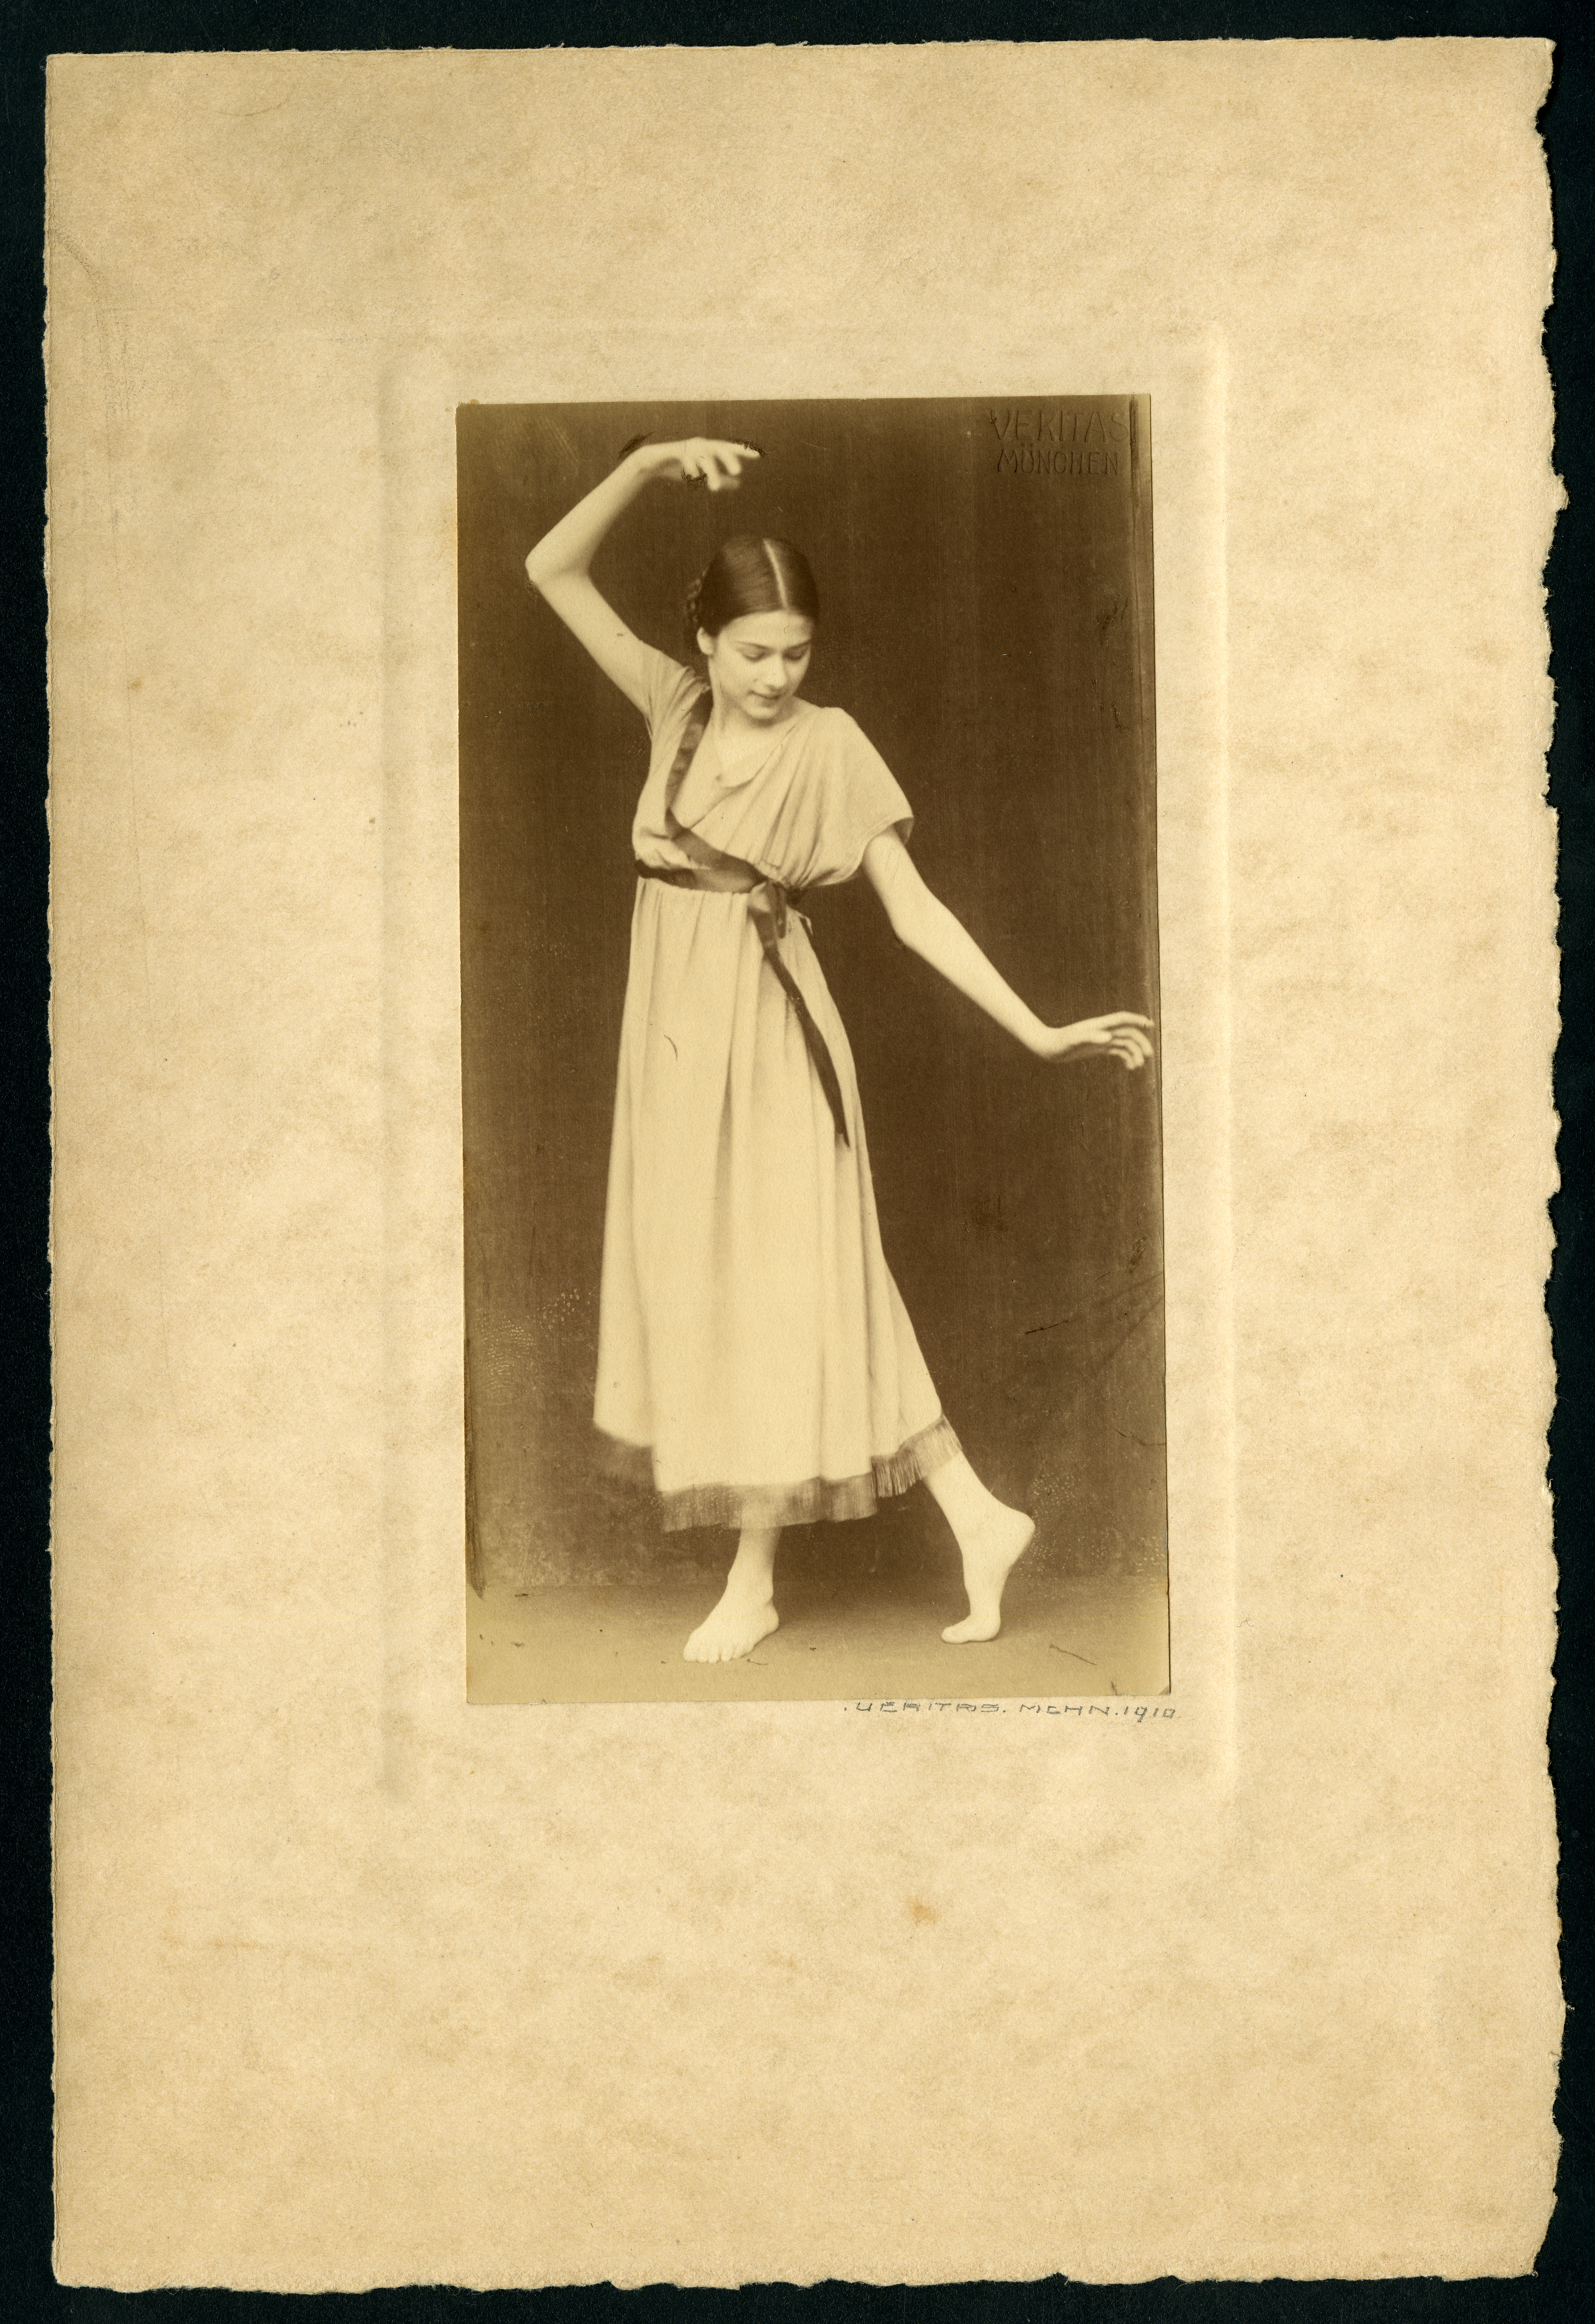 Stephanie Ludwig ~ Atelier Veritas (München) :: “Unidentified expressionist dancer, 1905” (*) | Grainger Museum Online